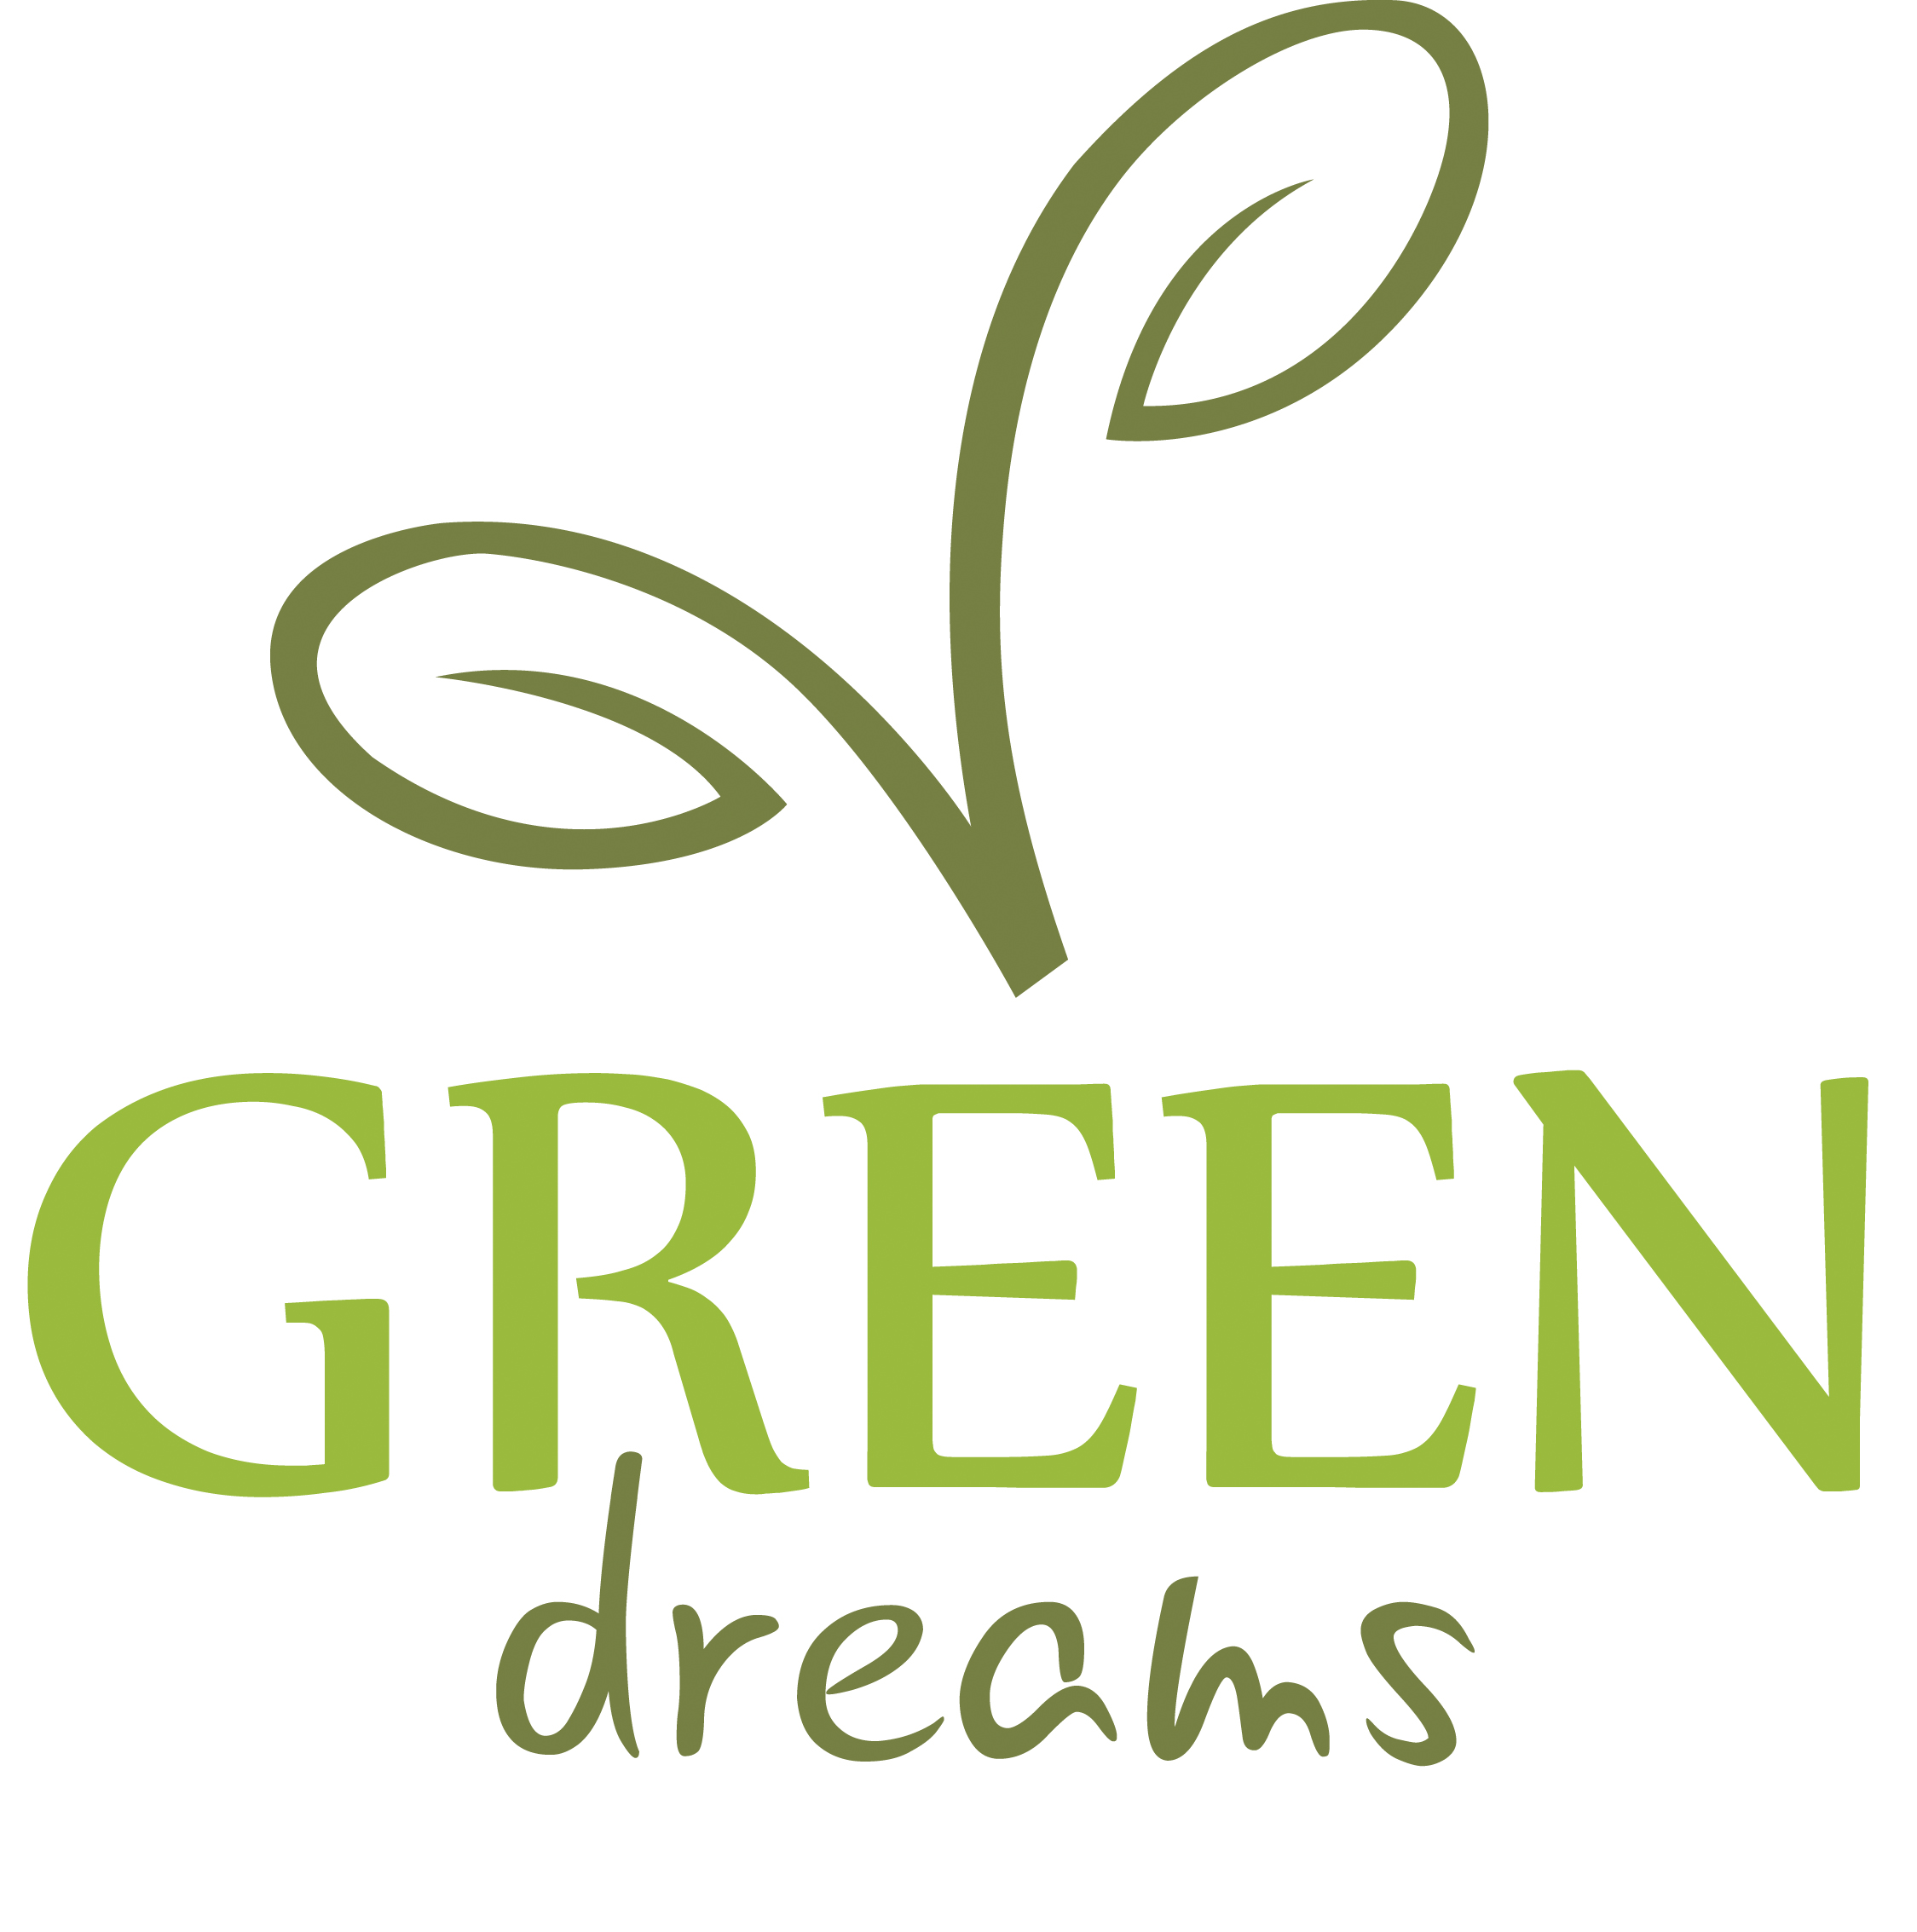 GREEN DREAMS